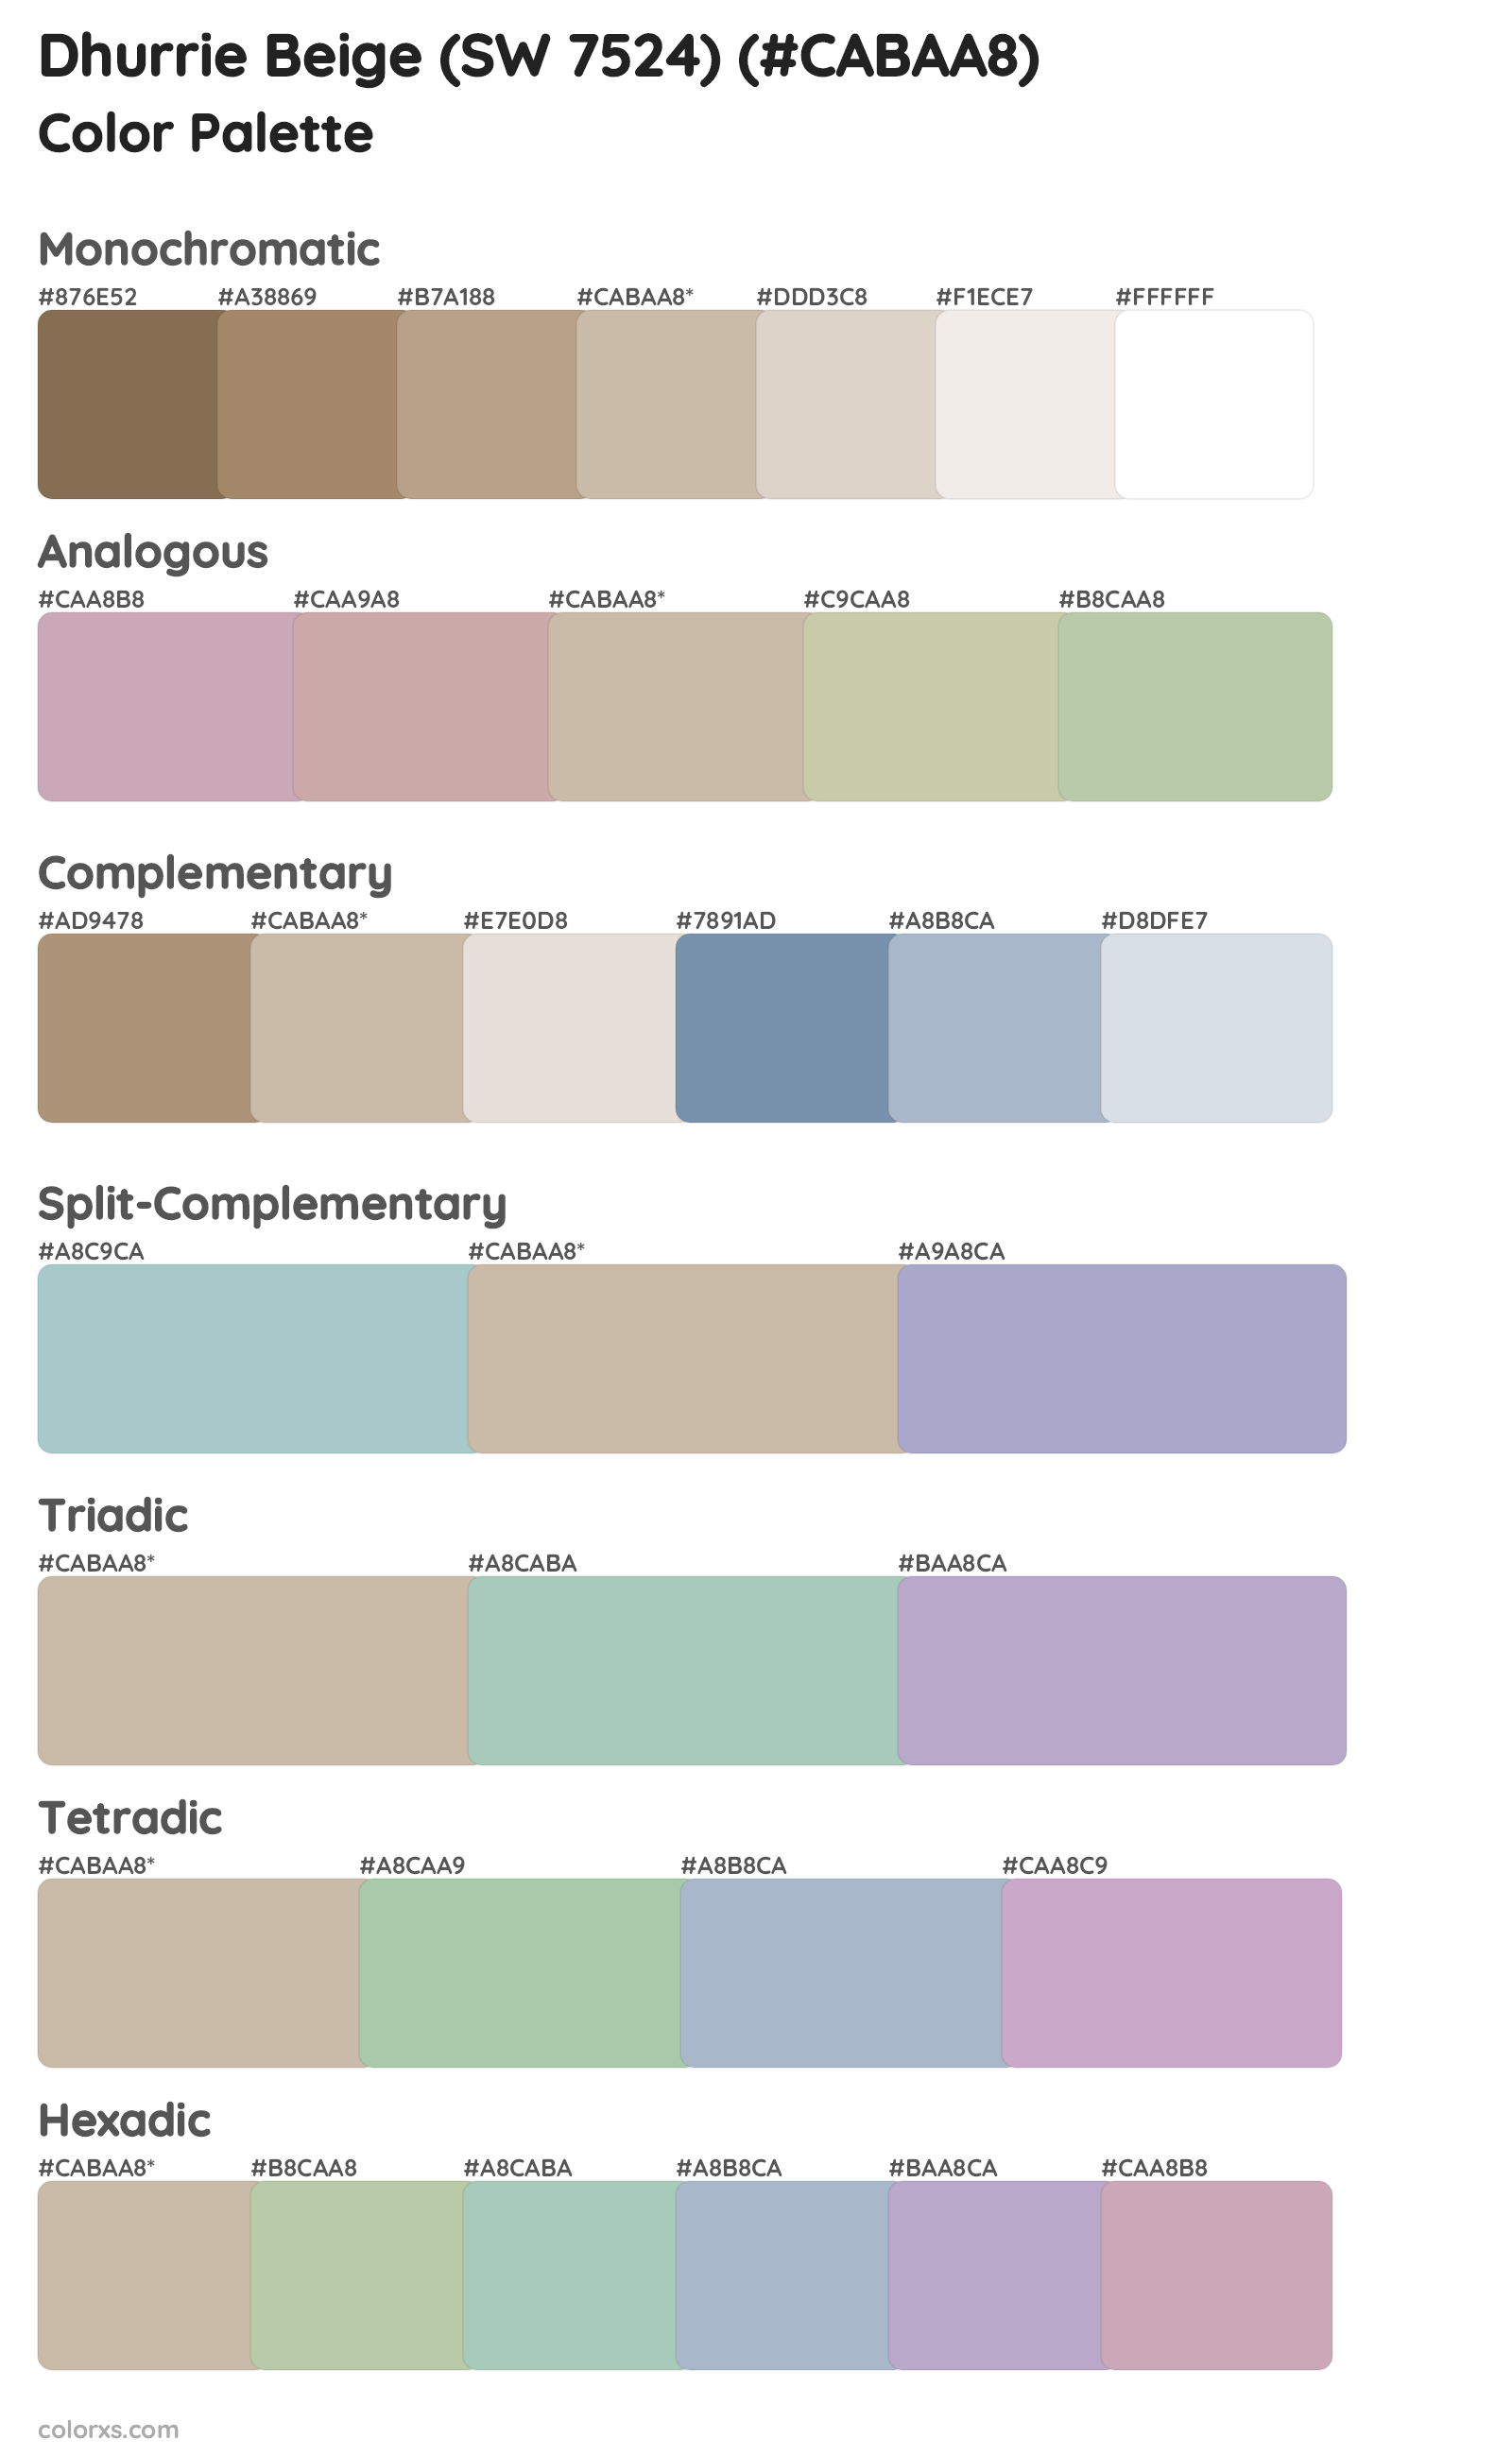 Dhurrie Beige (SW 7524) Color Scheme Palettes